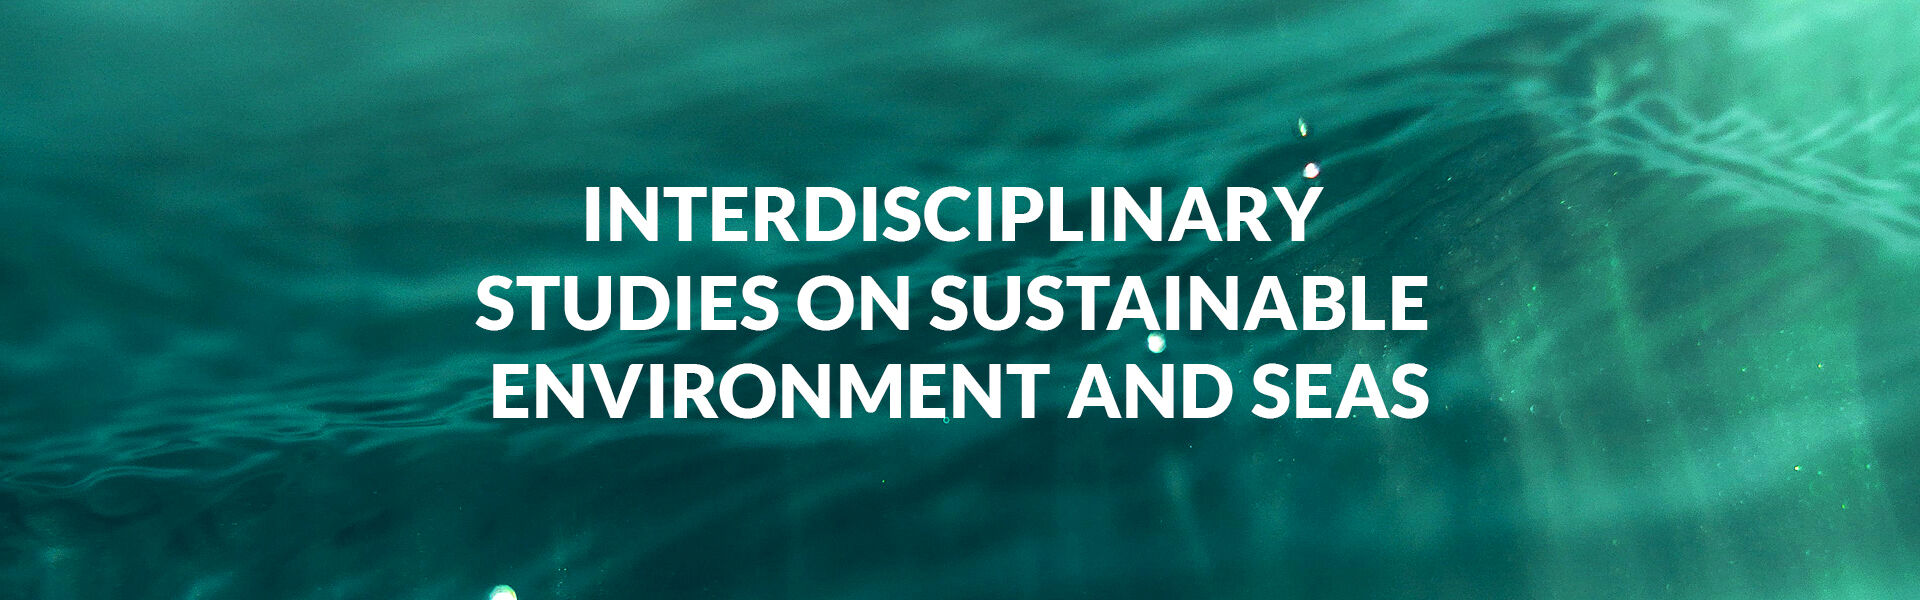 Ulisses - University of Lisbon Interdisciplinary Studies on Sustainability an Seas